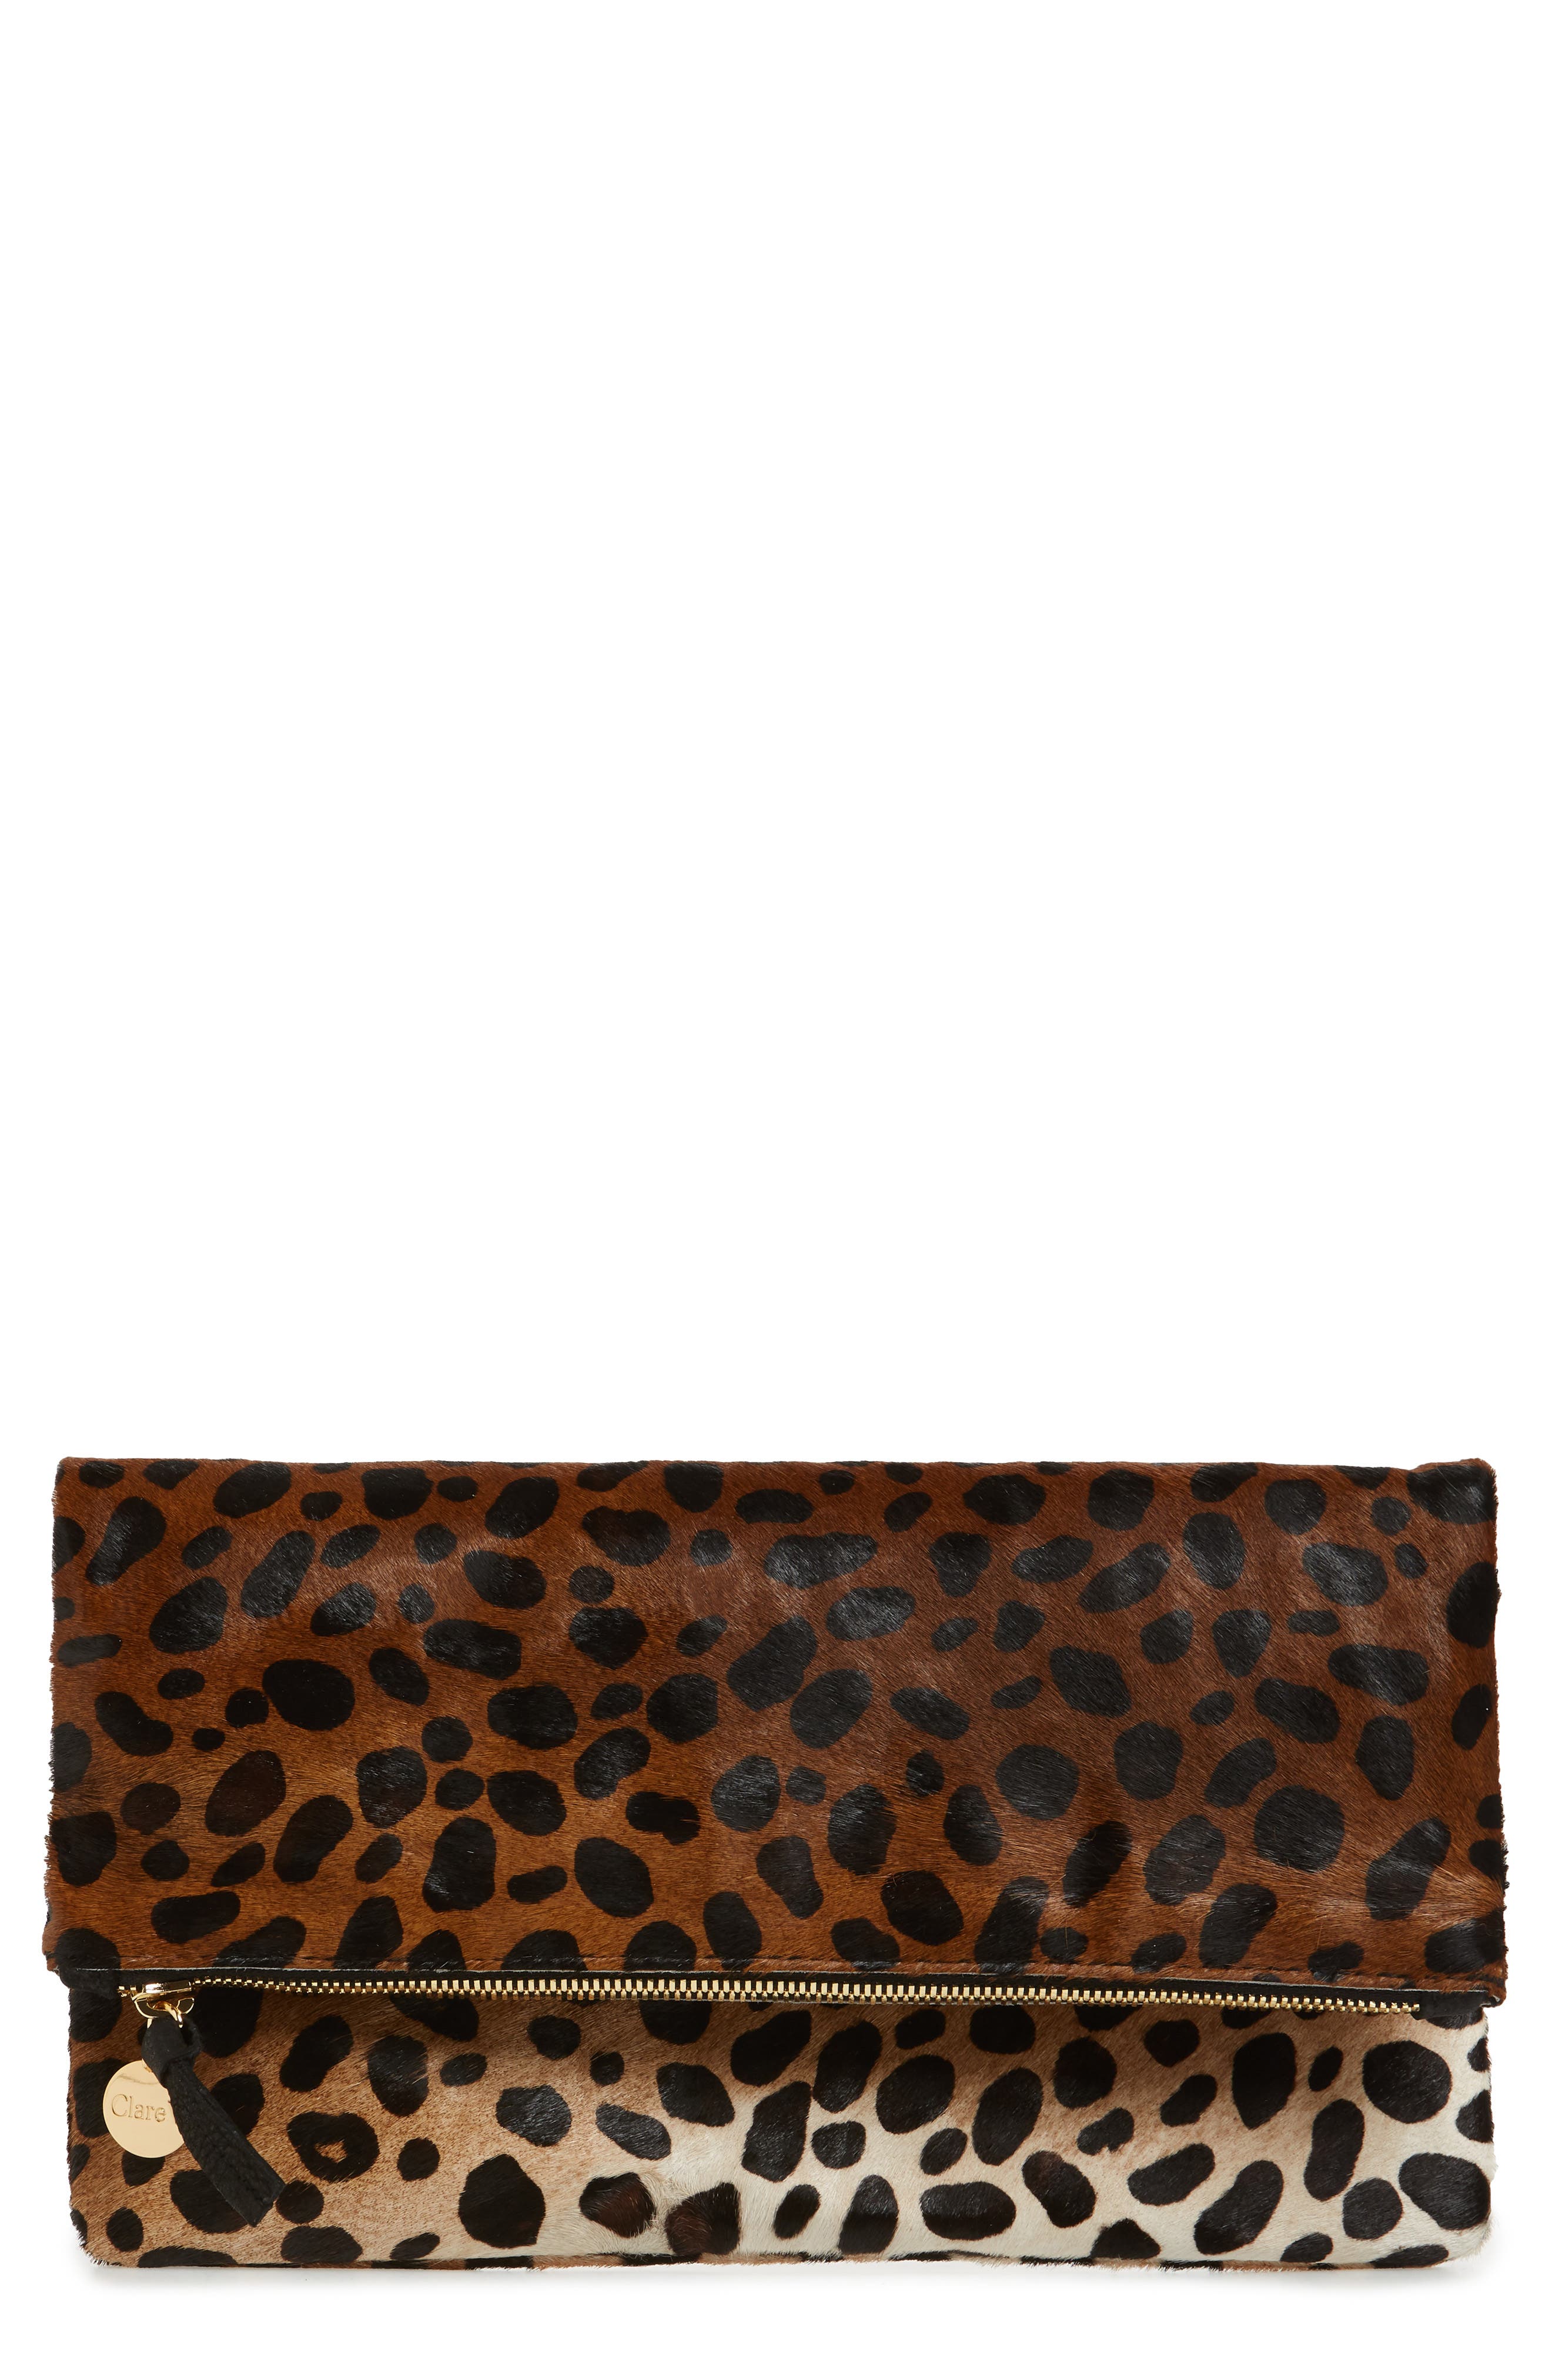 leopard clutch purse